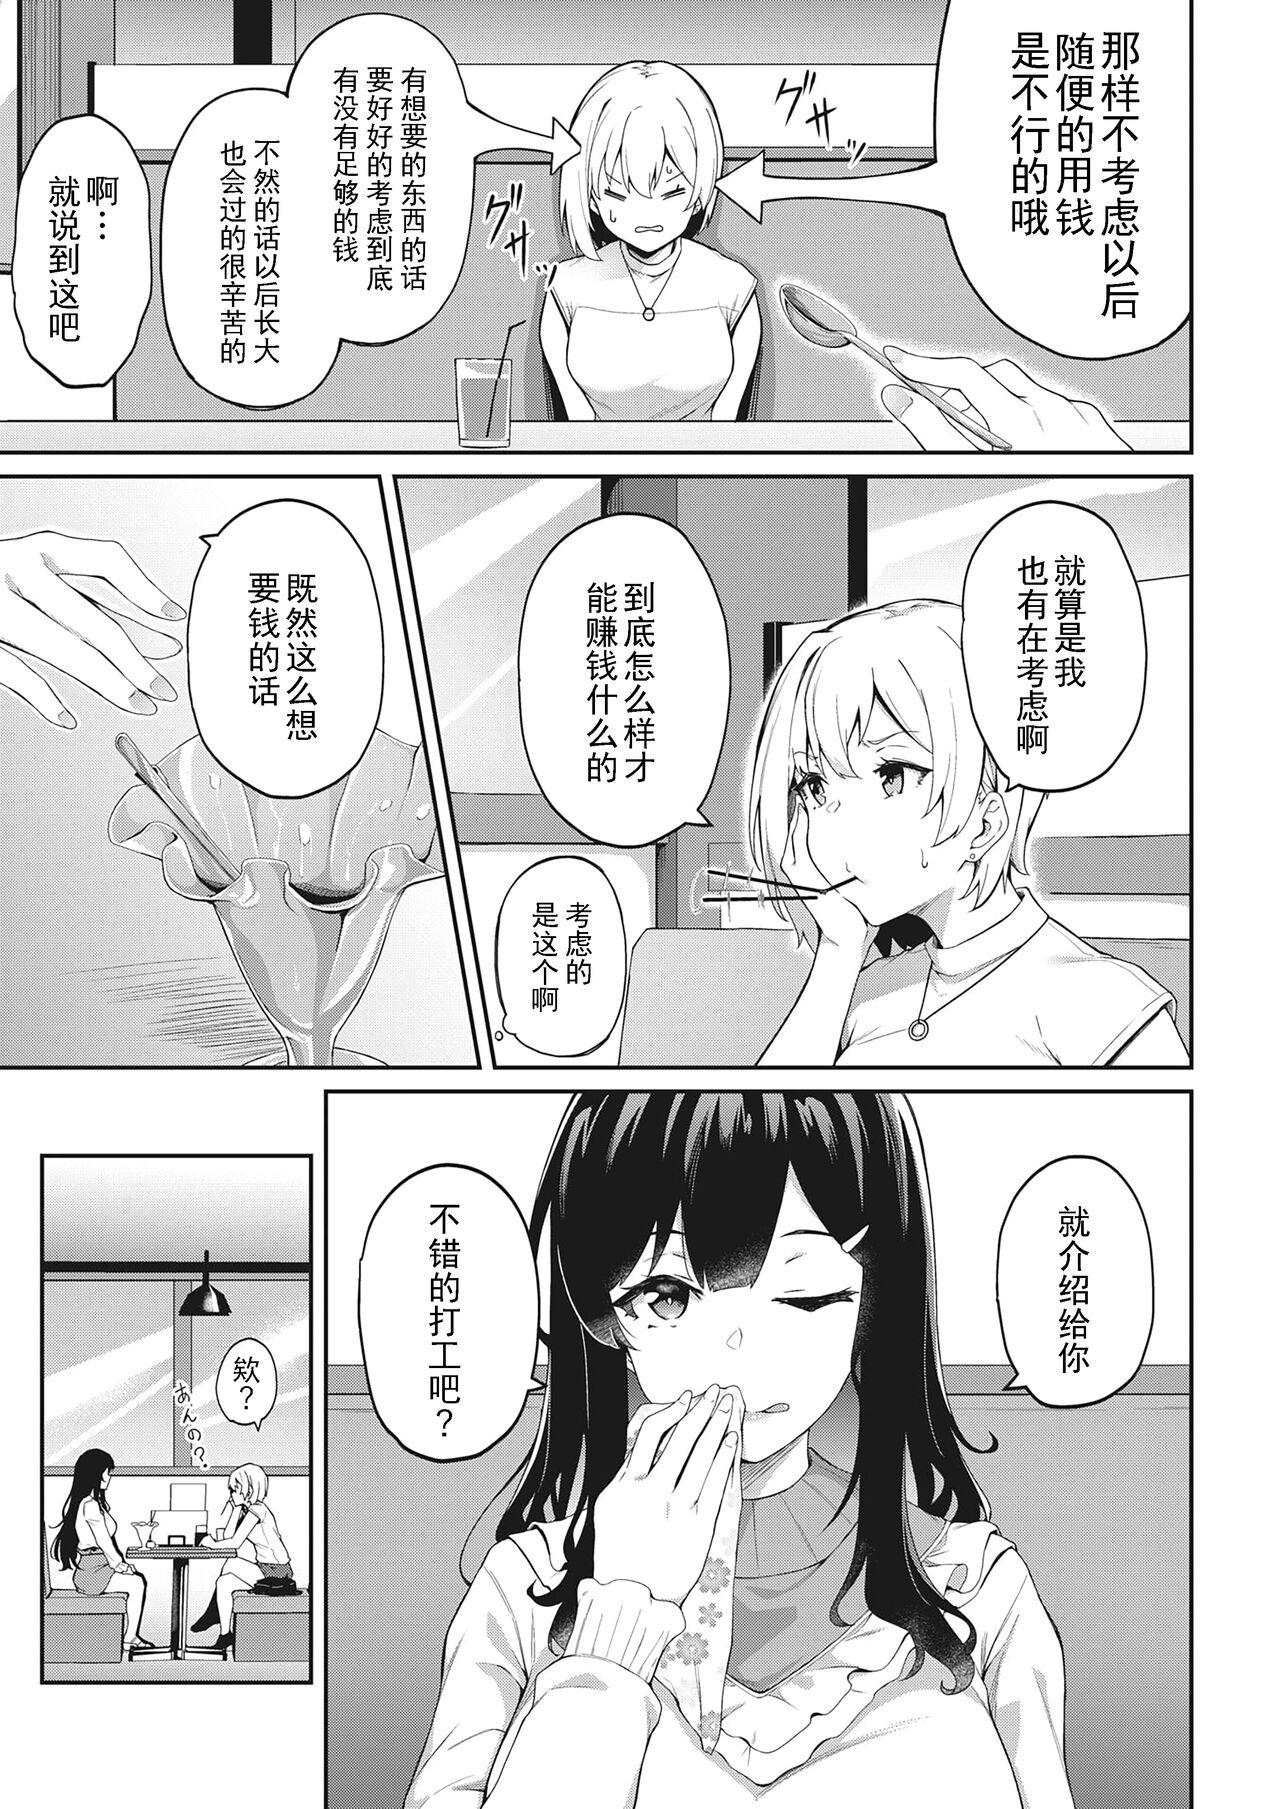 Gayfuck Kimi wa Ikasama o Shite iru Close - Page 3